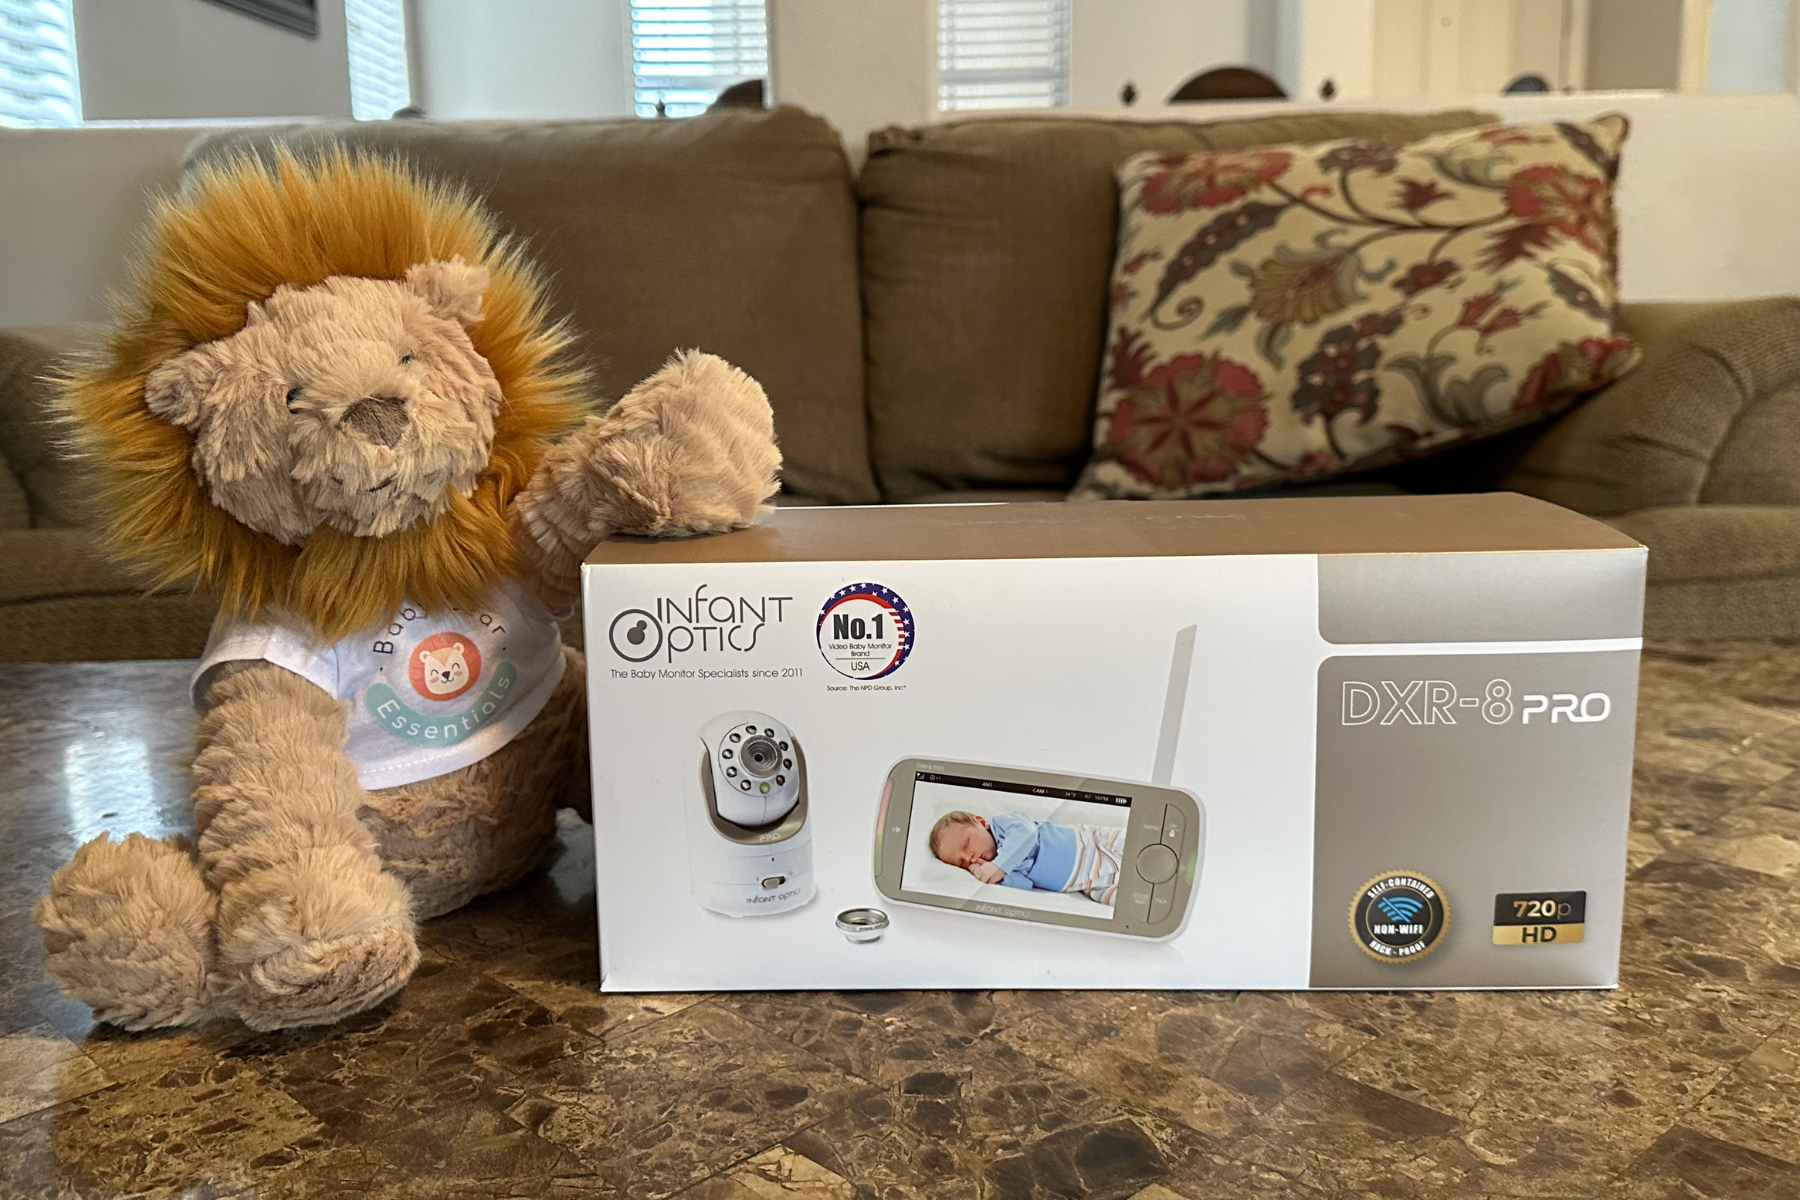 Infant Optics DXR-8 Pro baby monitor unopened box